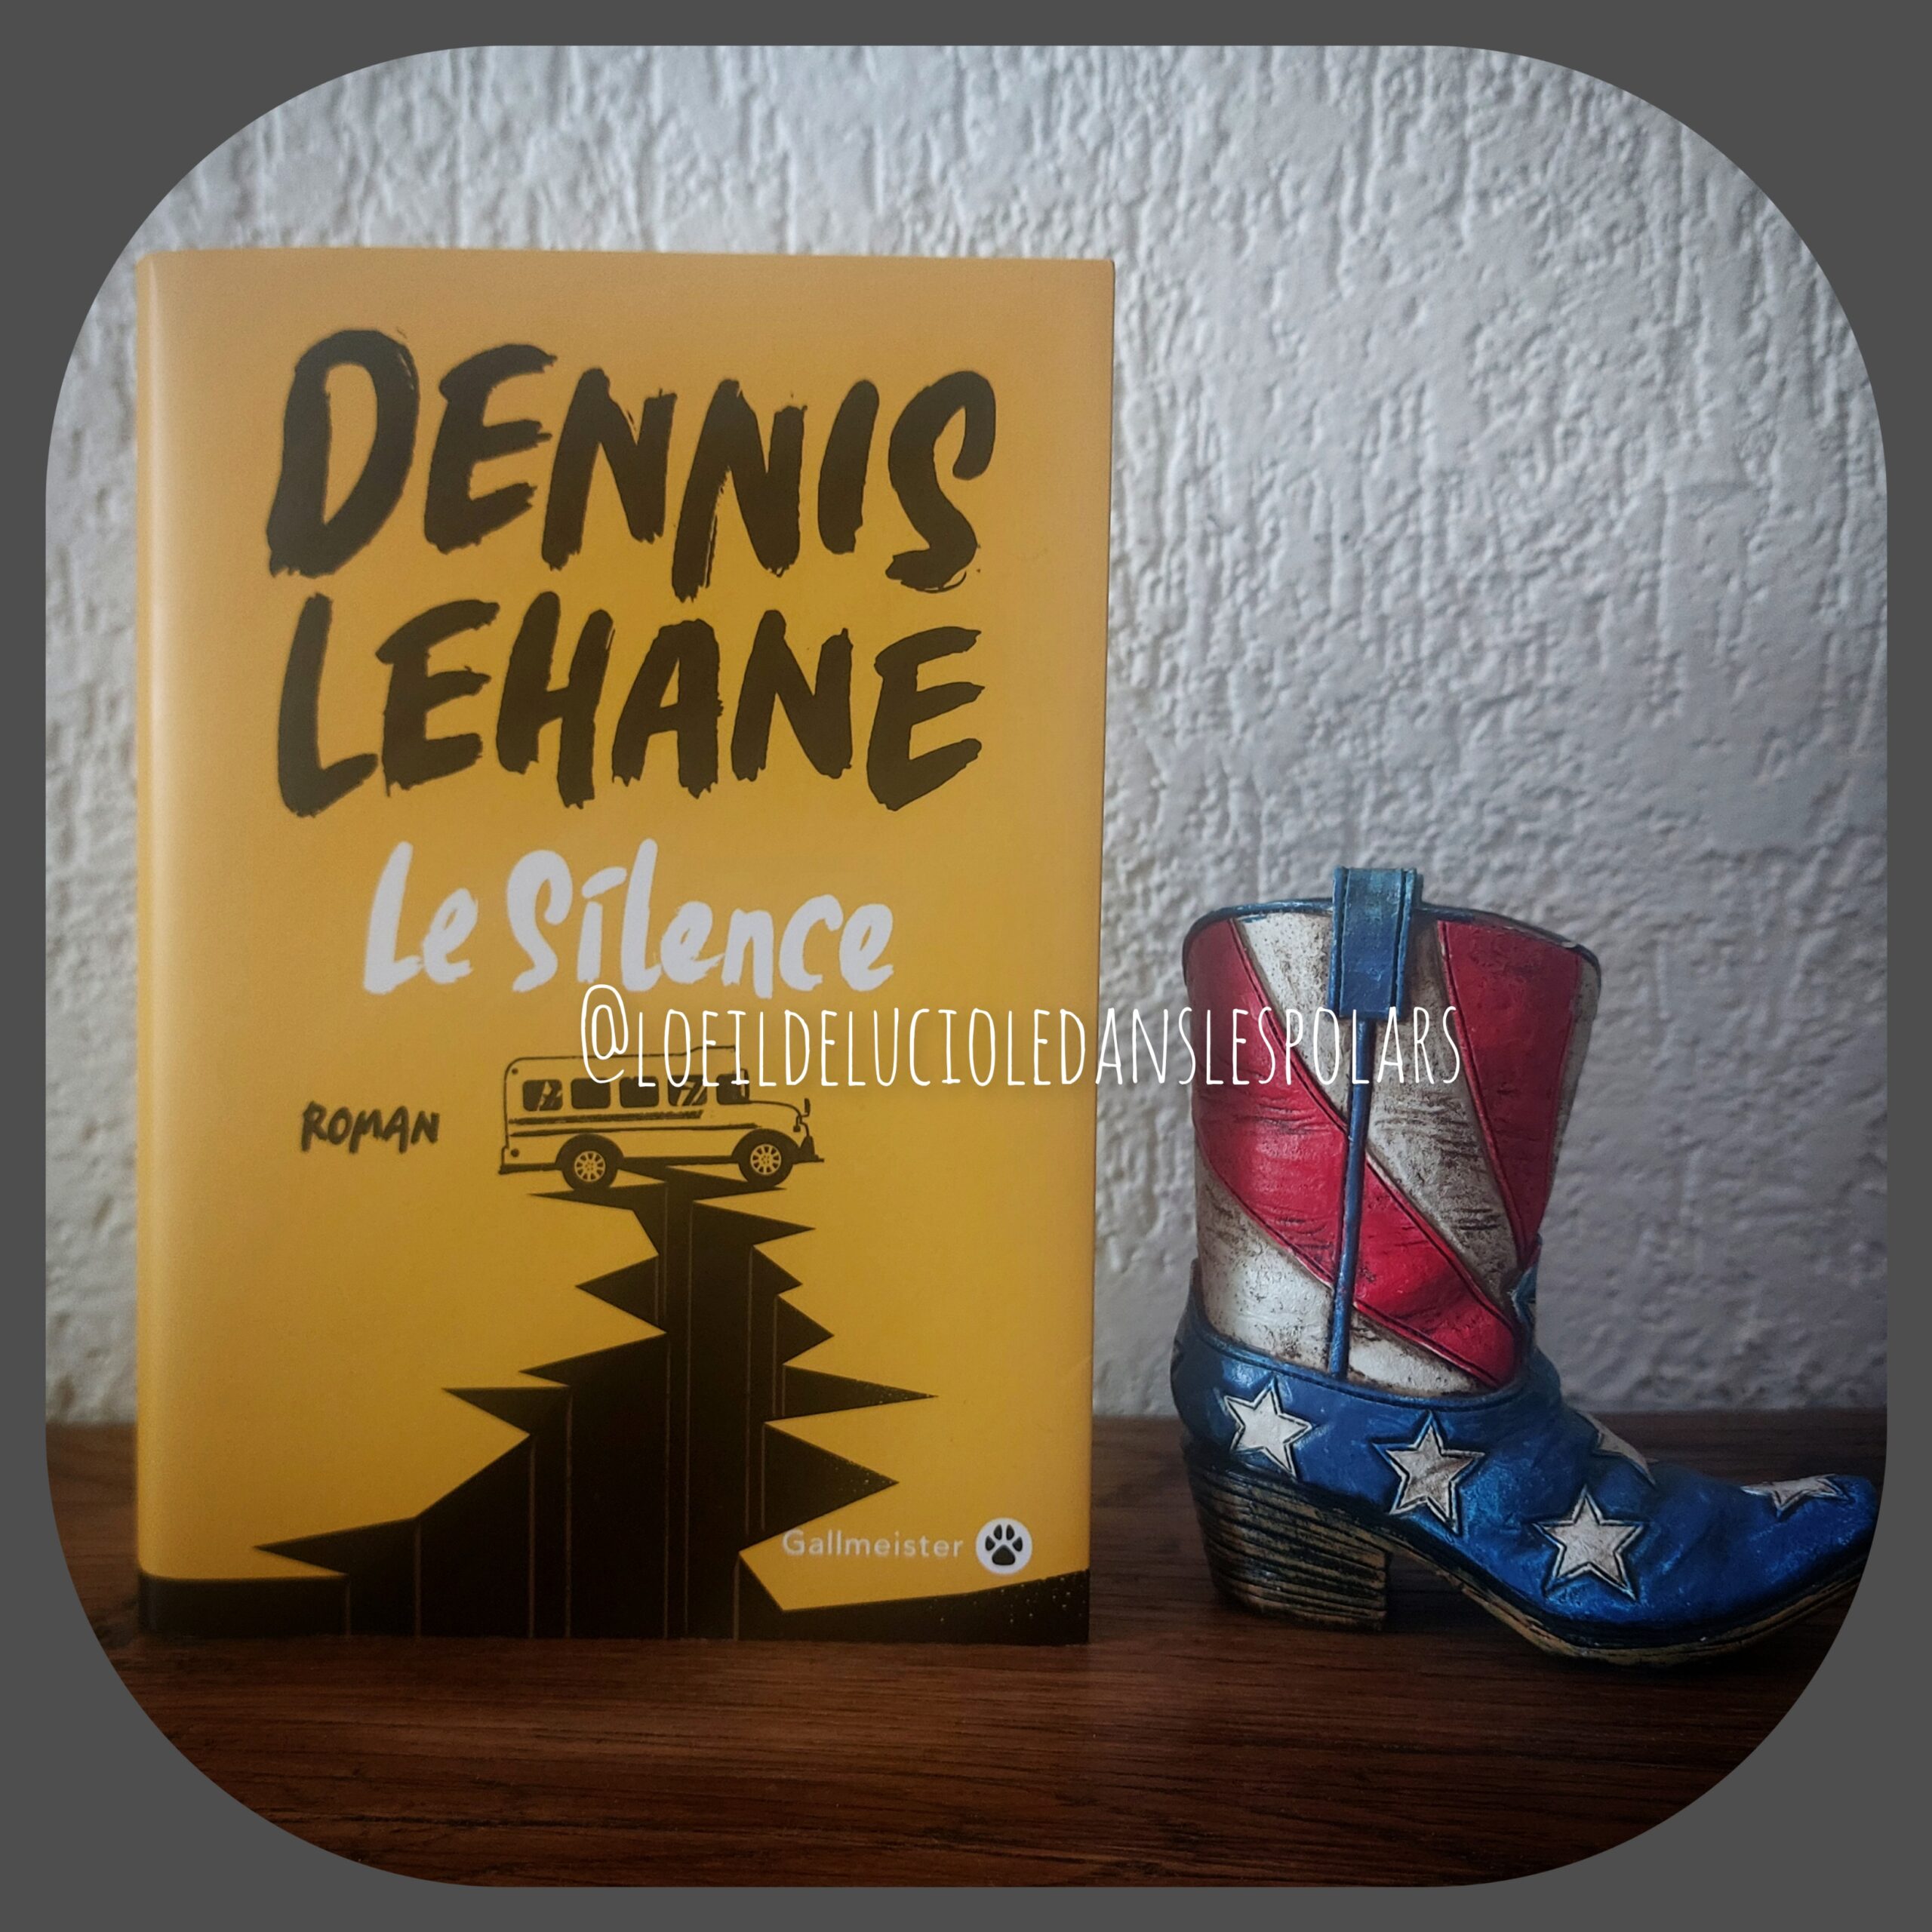 Le silence de Dennis Lehane